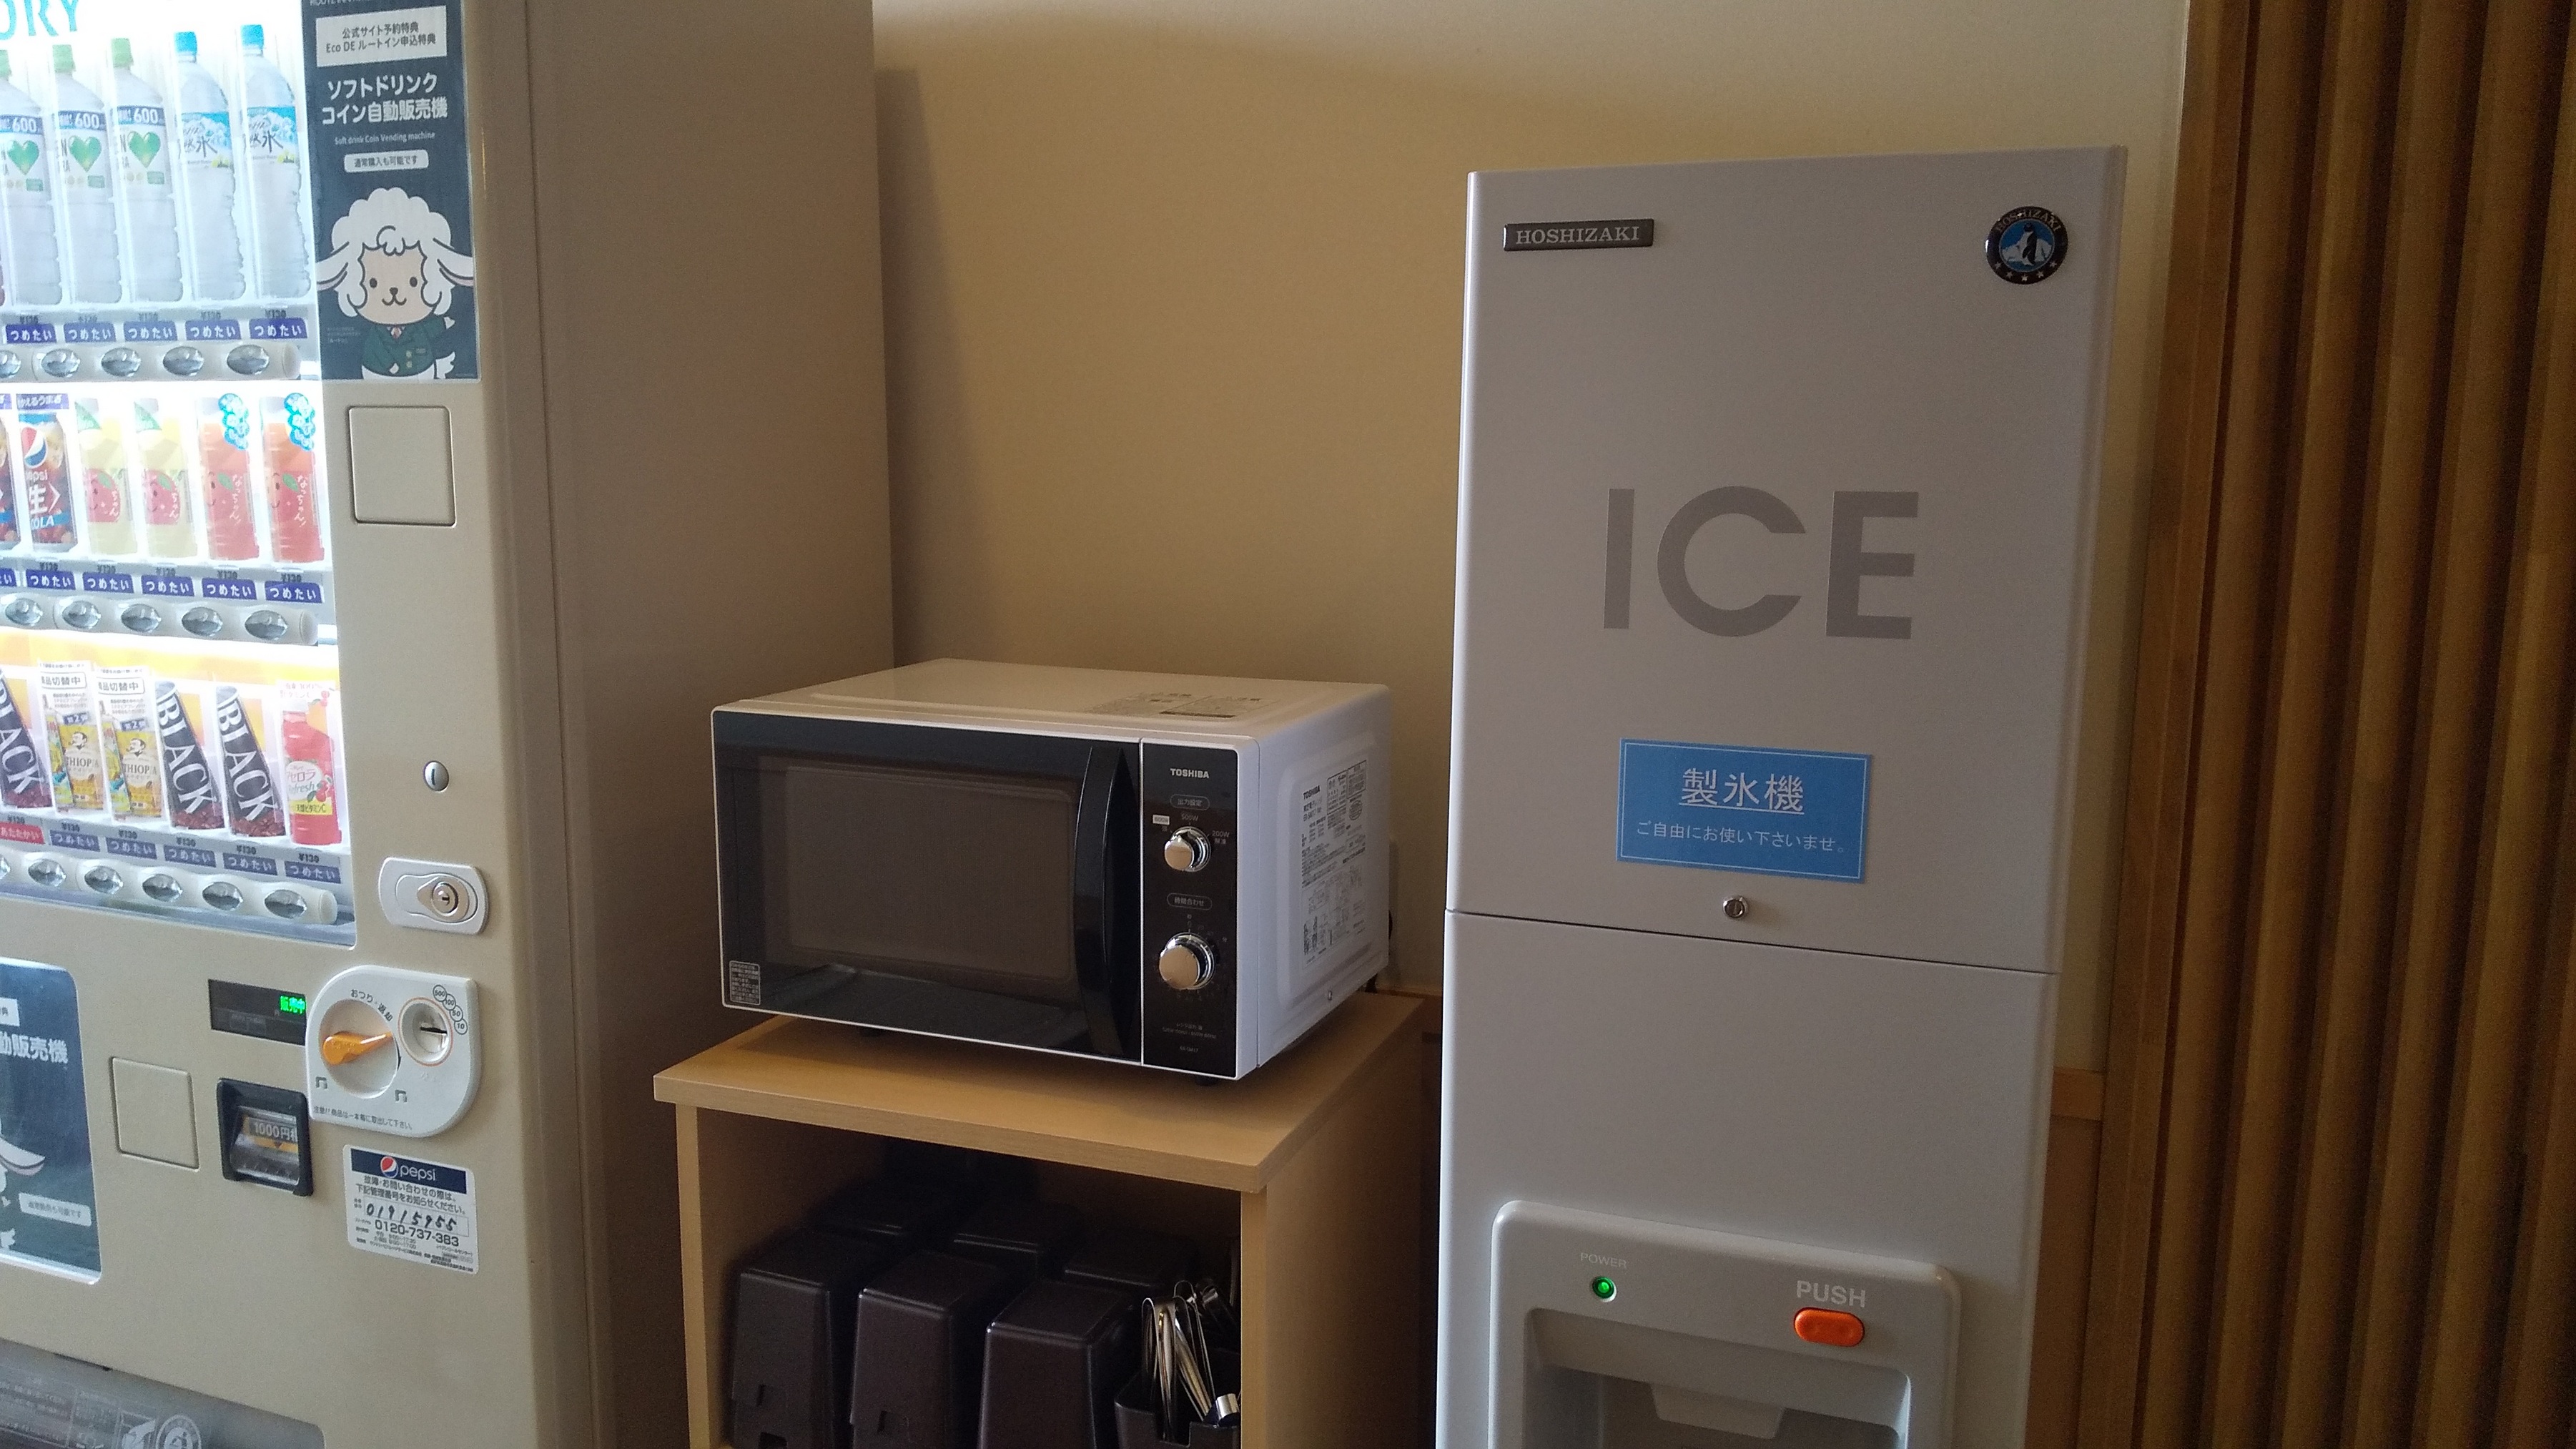 ●電子レンジ・製氷機は１Fにございます（無料）